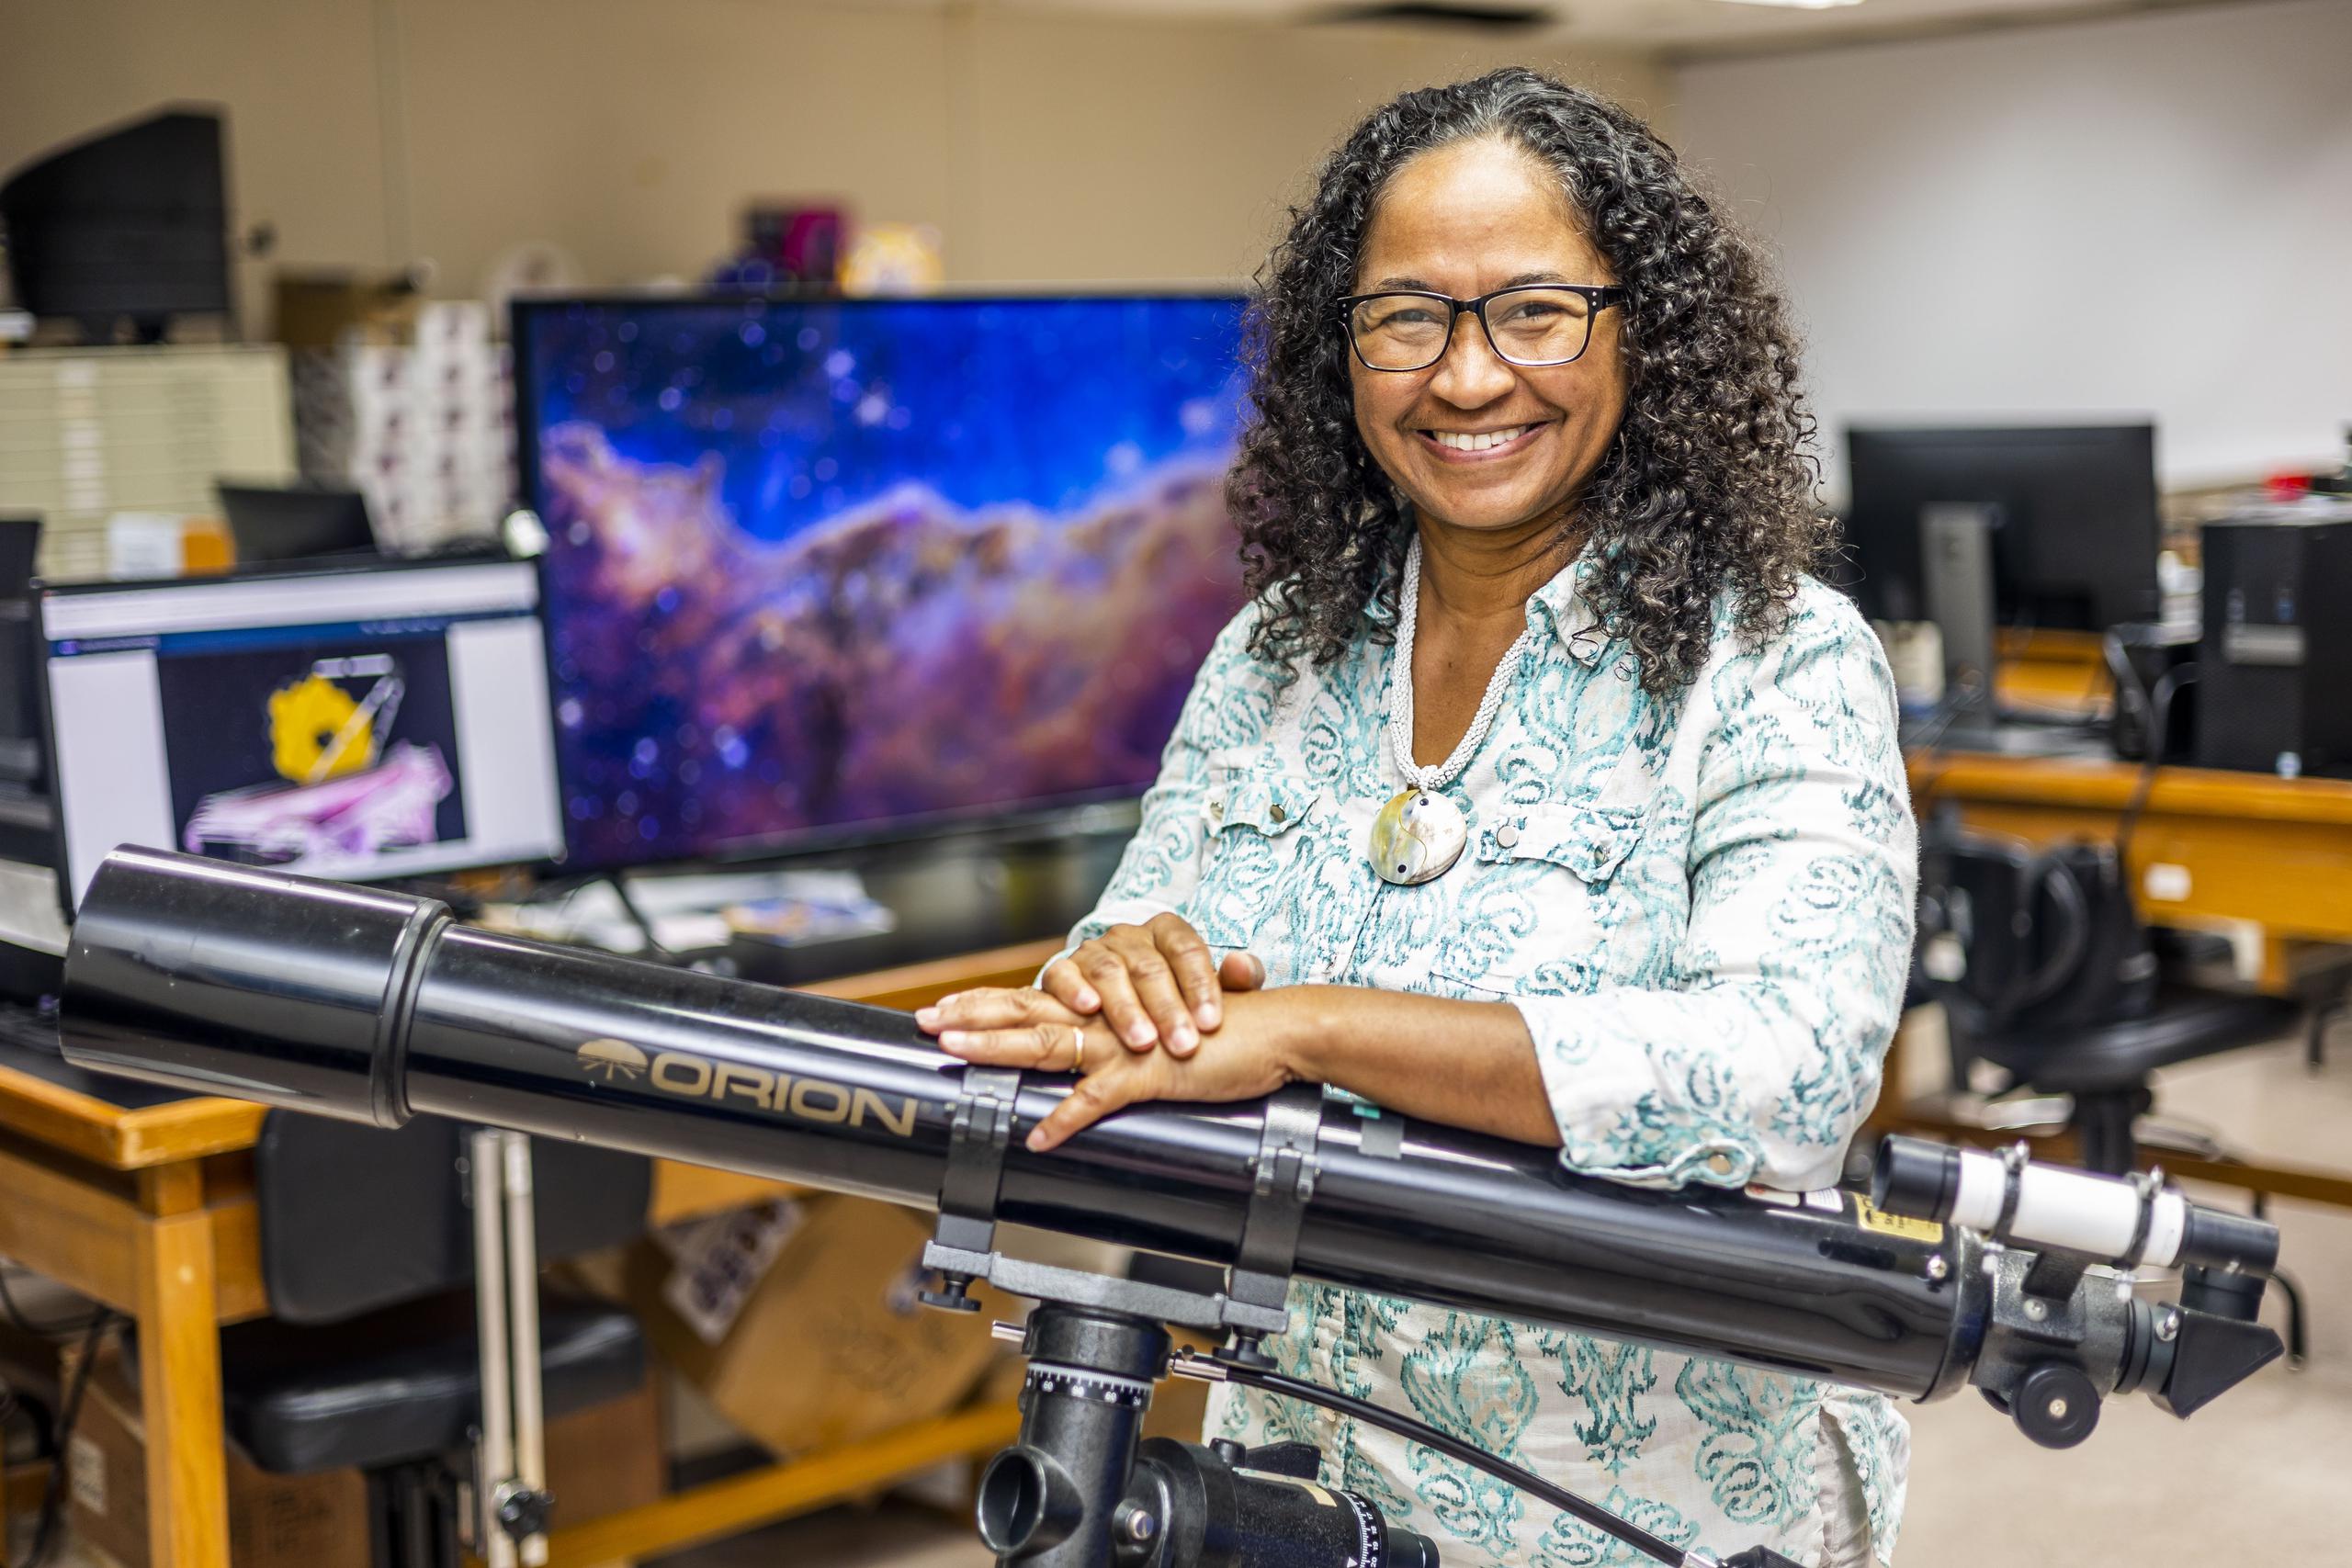 Lebrón es profesora en el recinto de Río Piedras de la UPR, donde imparte cursos en las facultades de Estudios Generales, Ciencias Físicas y Ciencias Naturales; y fue investigadora en lo que fue el Observatorio de Arecibo, además de colaborar con la NASA.